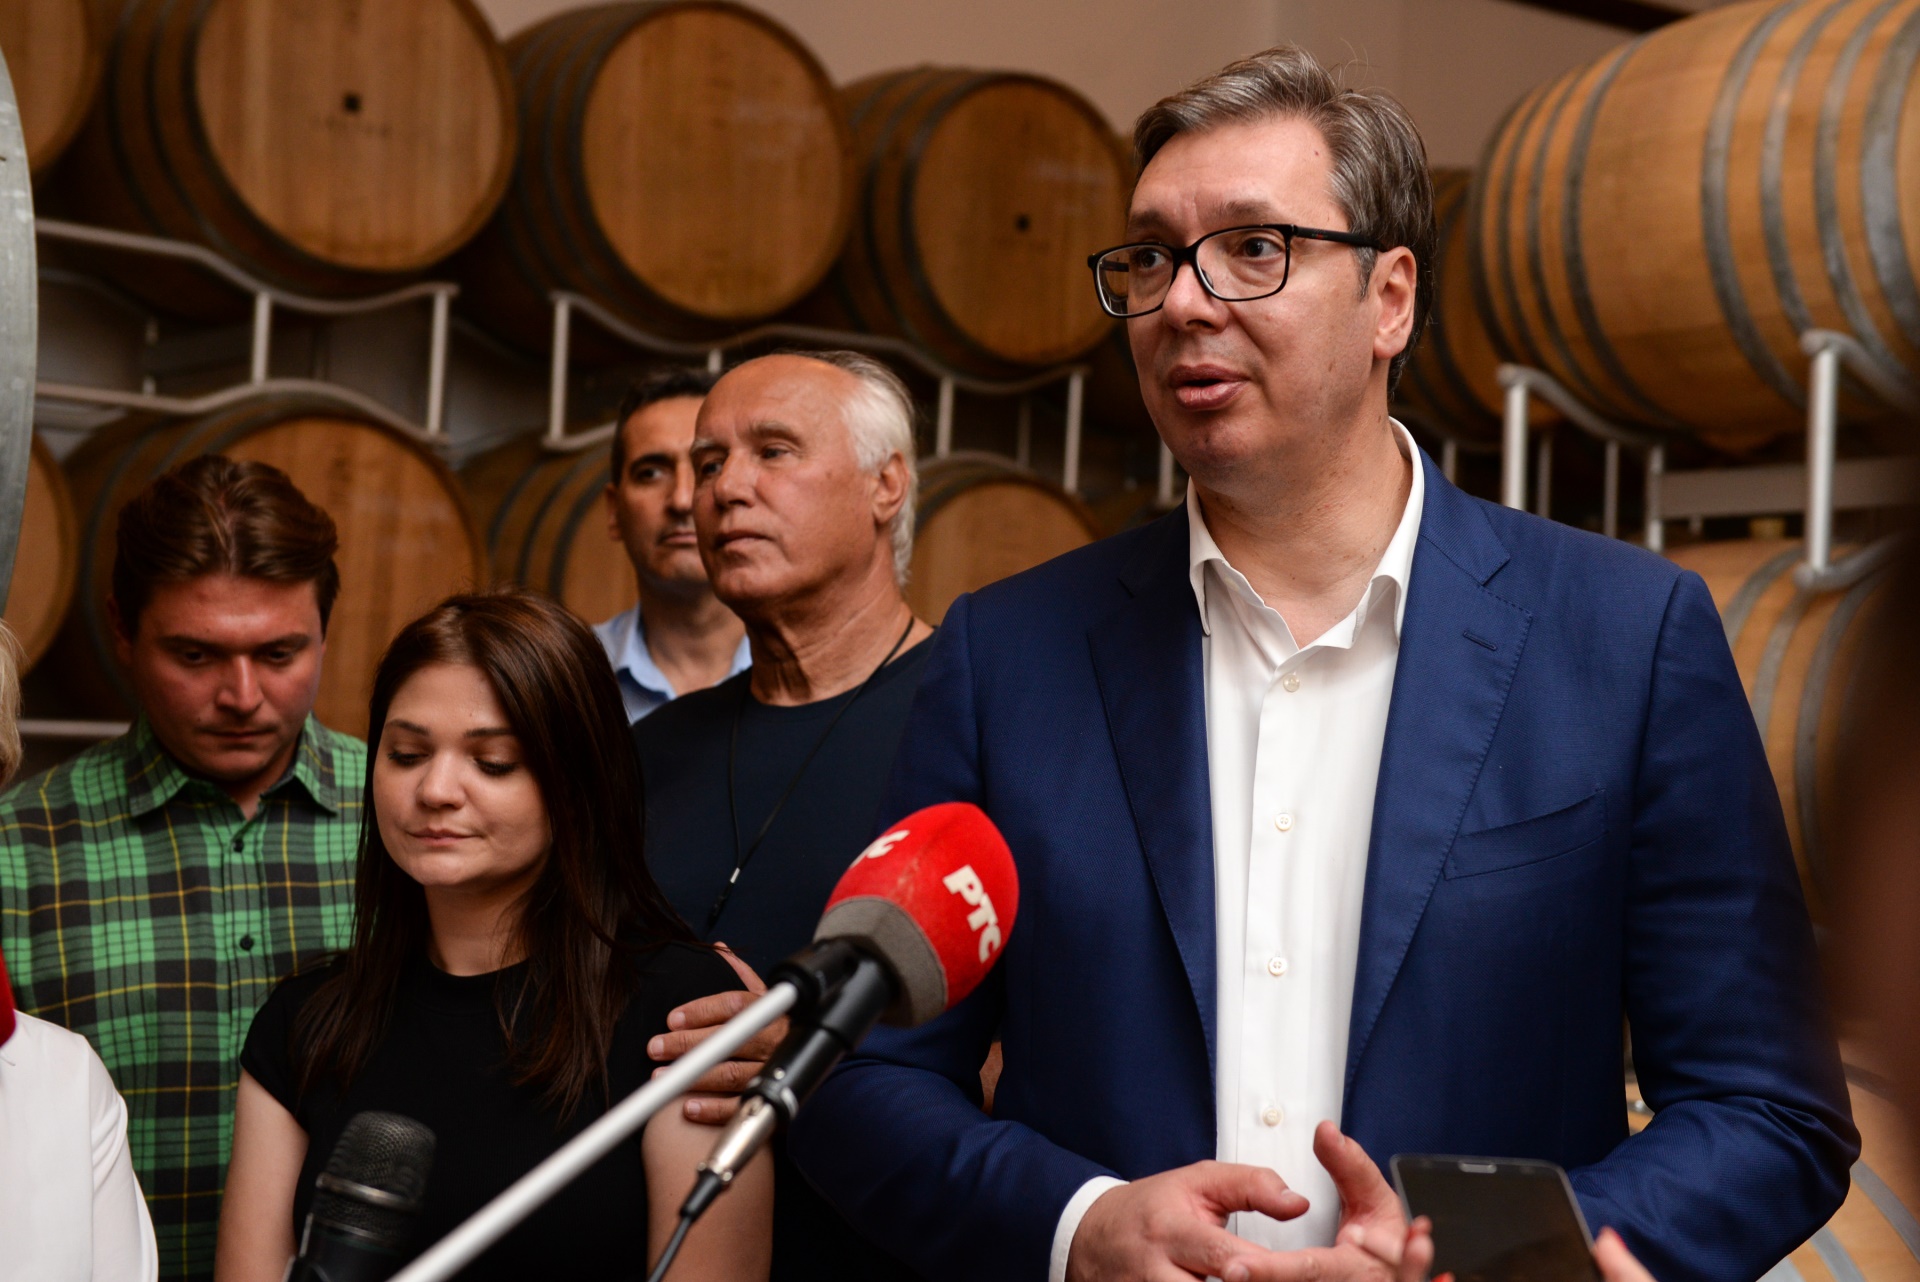 Predsednik Srbije Aleksandar Vucic obisao vinariju "Lastar" u Sekuricu